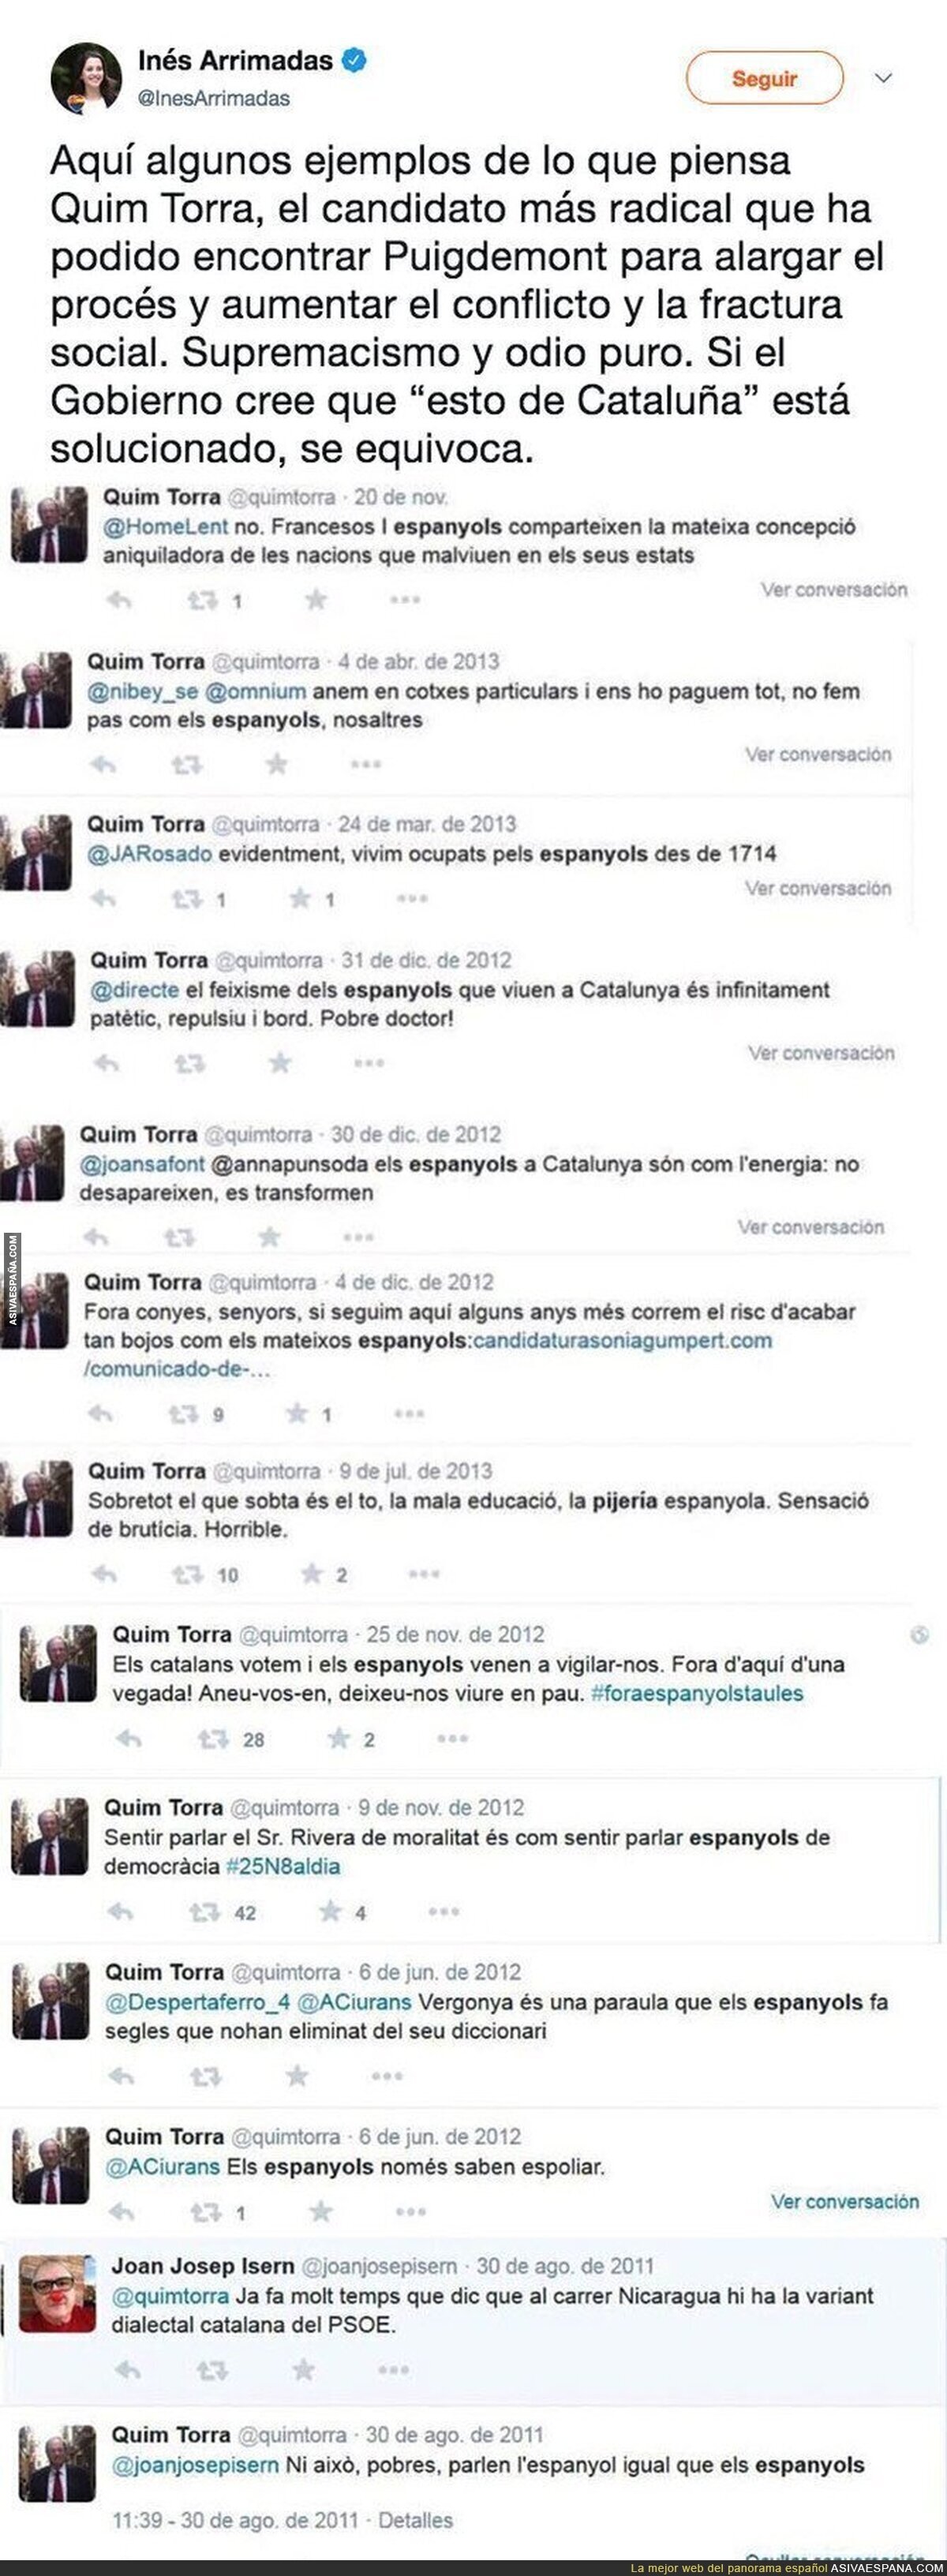 Los polémicos tuits de Quim Torra (candidato a President de Catalunya) llenos de odio que ya ha borrado